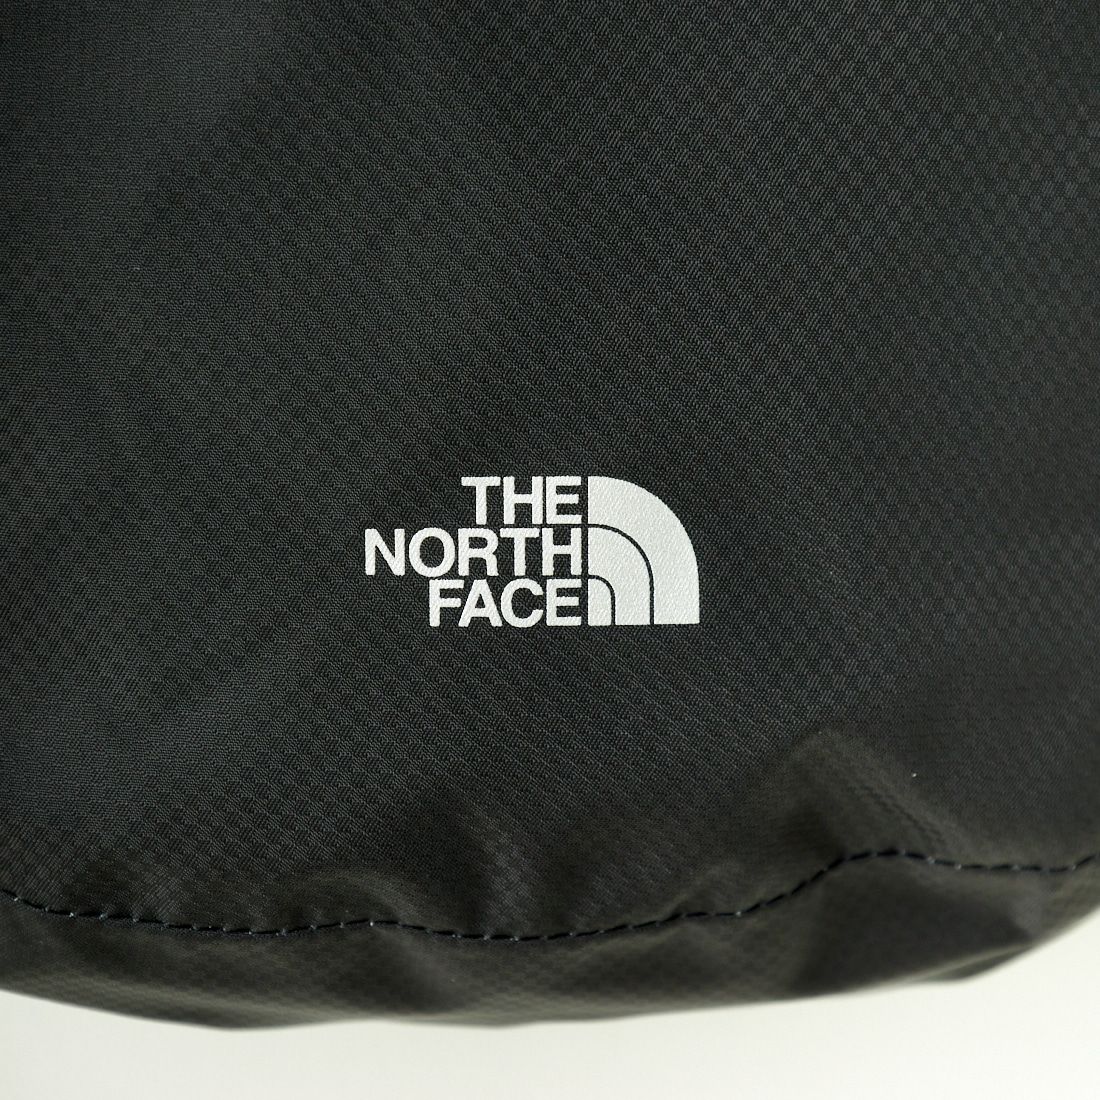 THE NORTH FACE [ザ ノースフェイス] ウォータープルーフショルダーポケット [NM92400] K